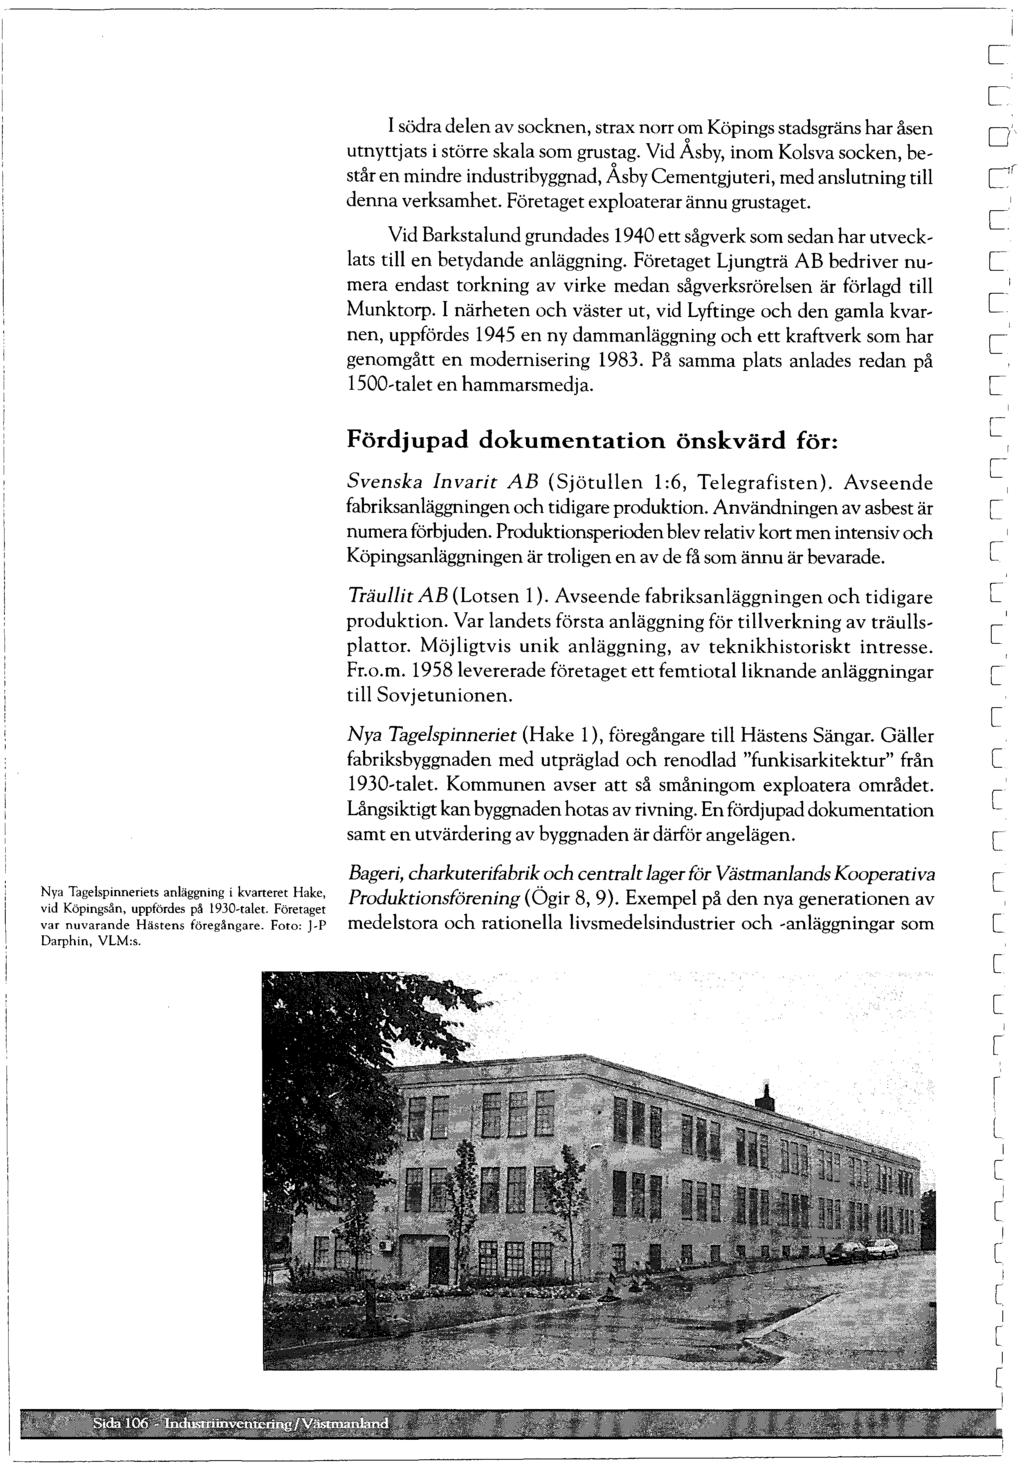 Nya Tagespinneriets anäggning i kvarteret Hake, vid Köpingsån, uppfördes på 1930-taet. Företaget var nuvarande Hästens föregångare. Foto: -p Darphin, VLM:s.